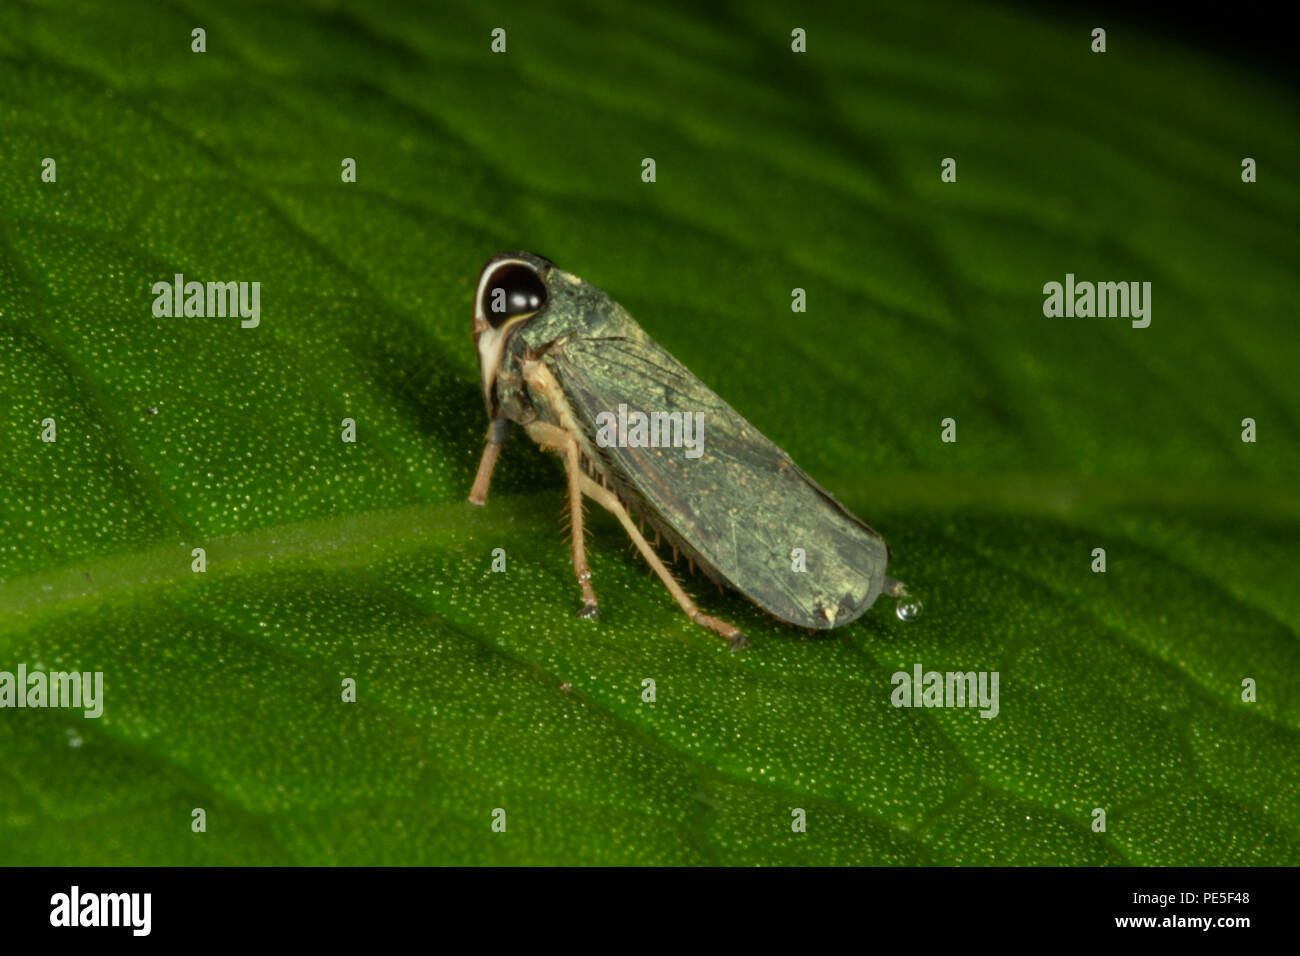 Coelidiinae est une sous-famille de cicadelles dans la famille Cicadellidae. Le parc national de Khao Luang, la Thaïlande. Banque D'Images